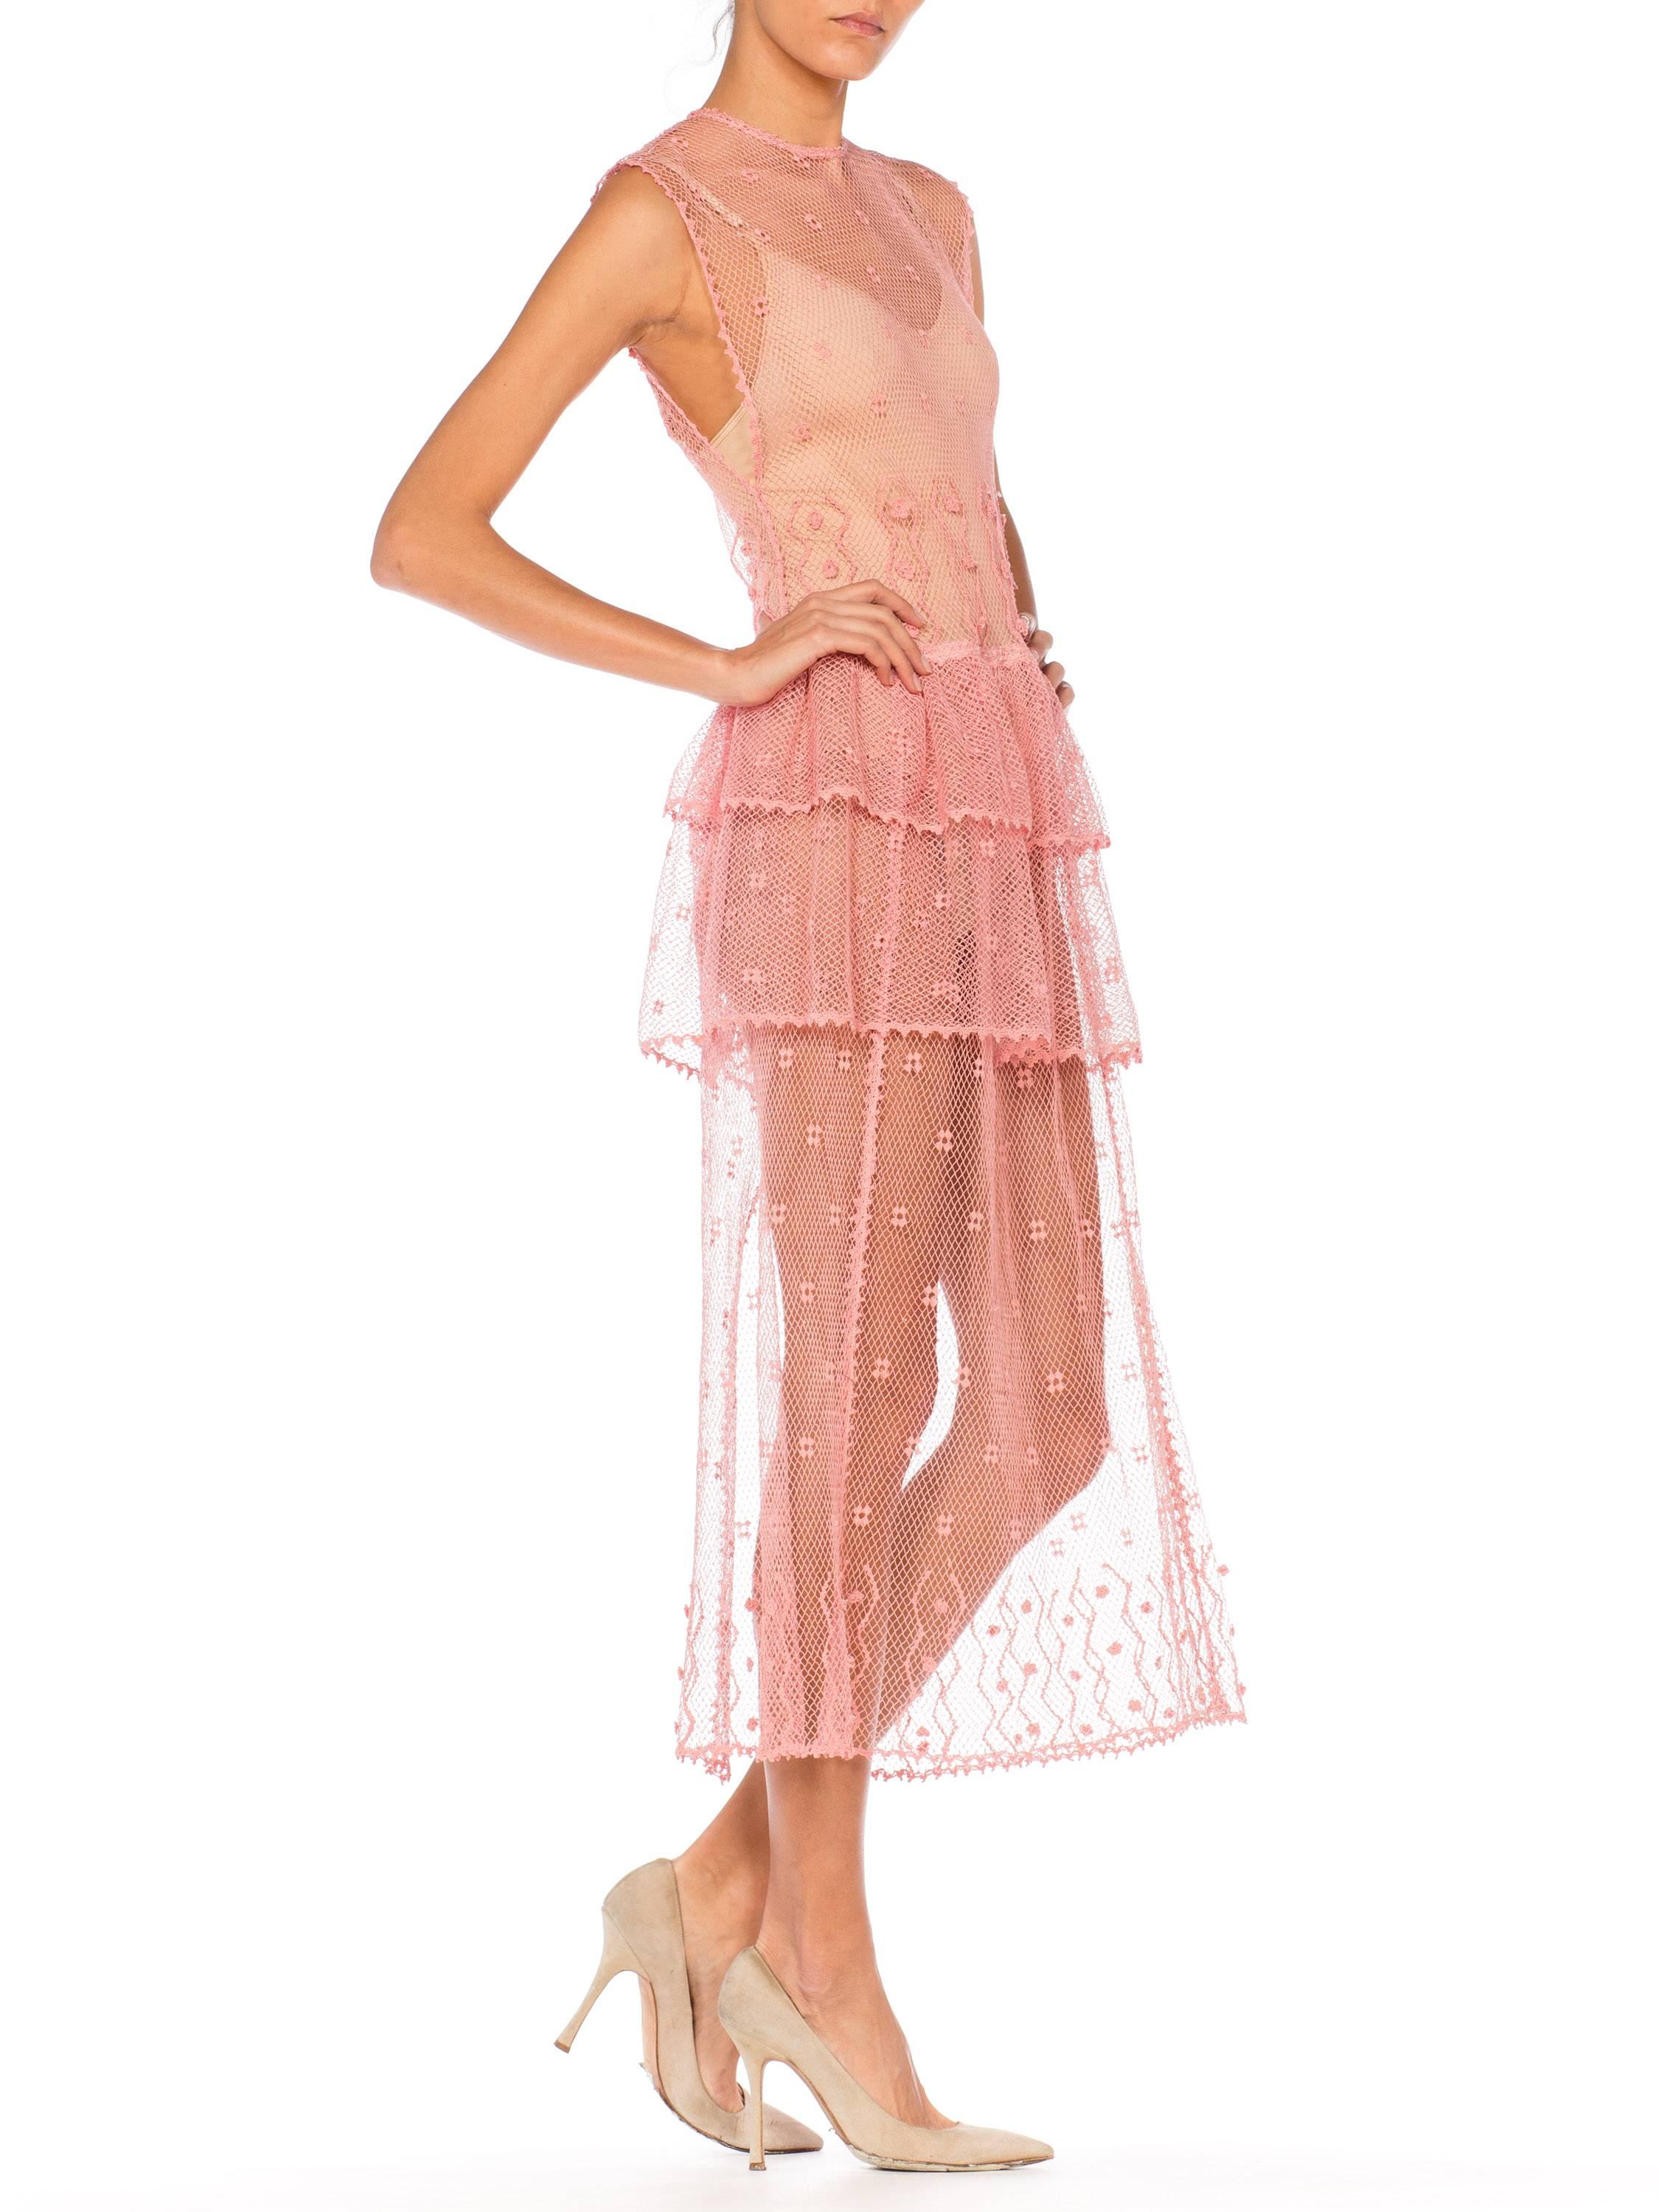 Sheer Pink Hand Crochet Cotton Net Dress, 1980s   5